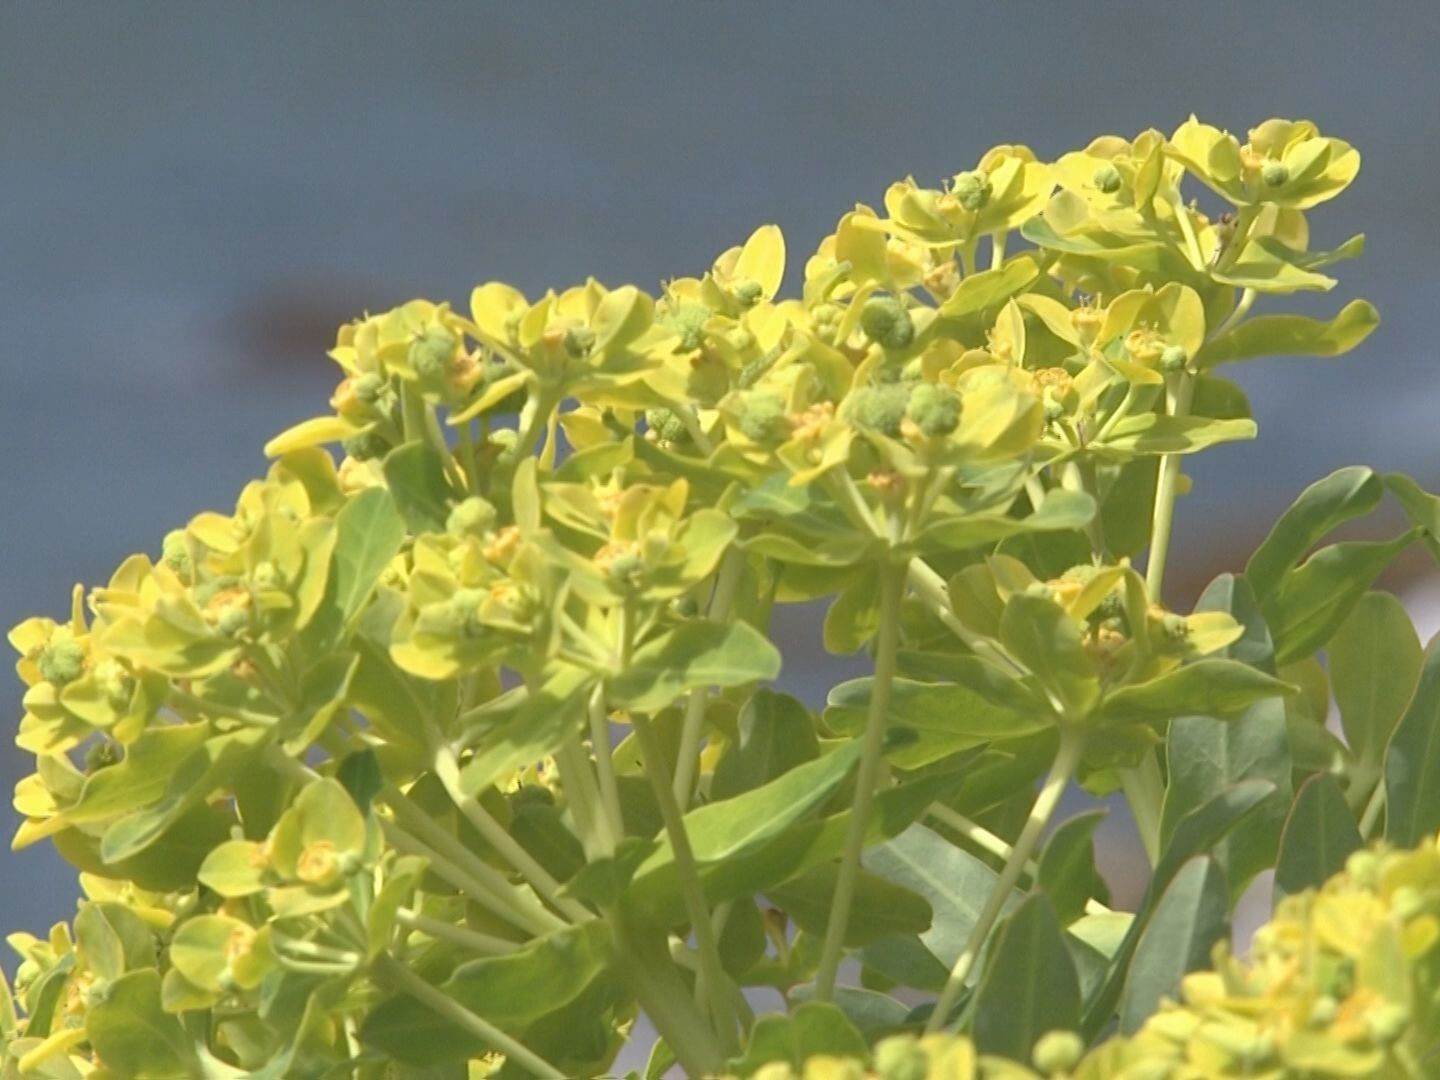 菜の花の様な黄色の花 イワタイゲキ が見頃 海岸開発等で全国的に減少傾向 三重 東海テレビnews